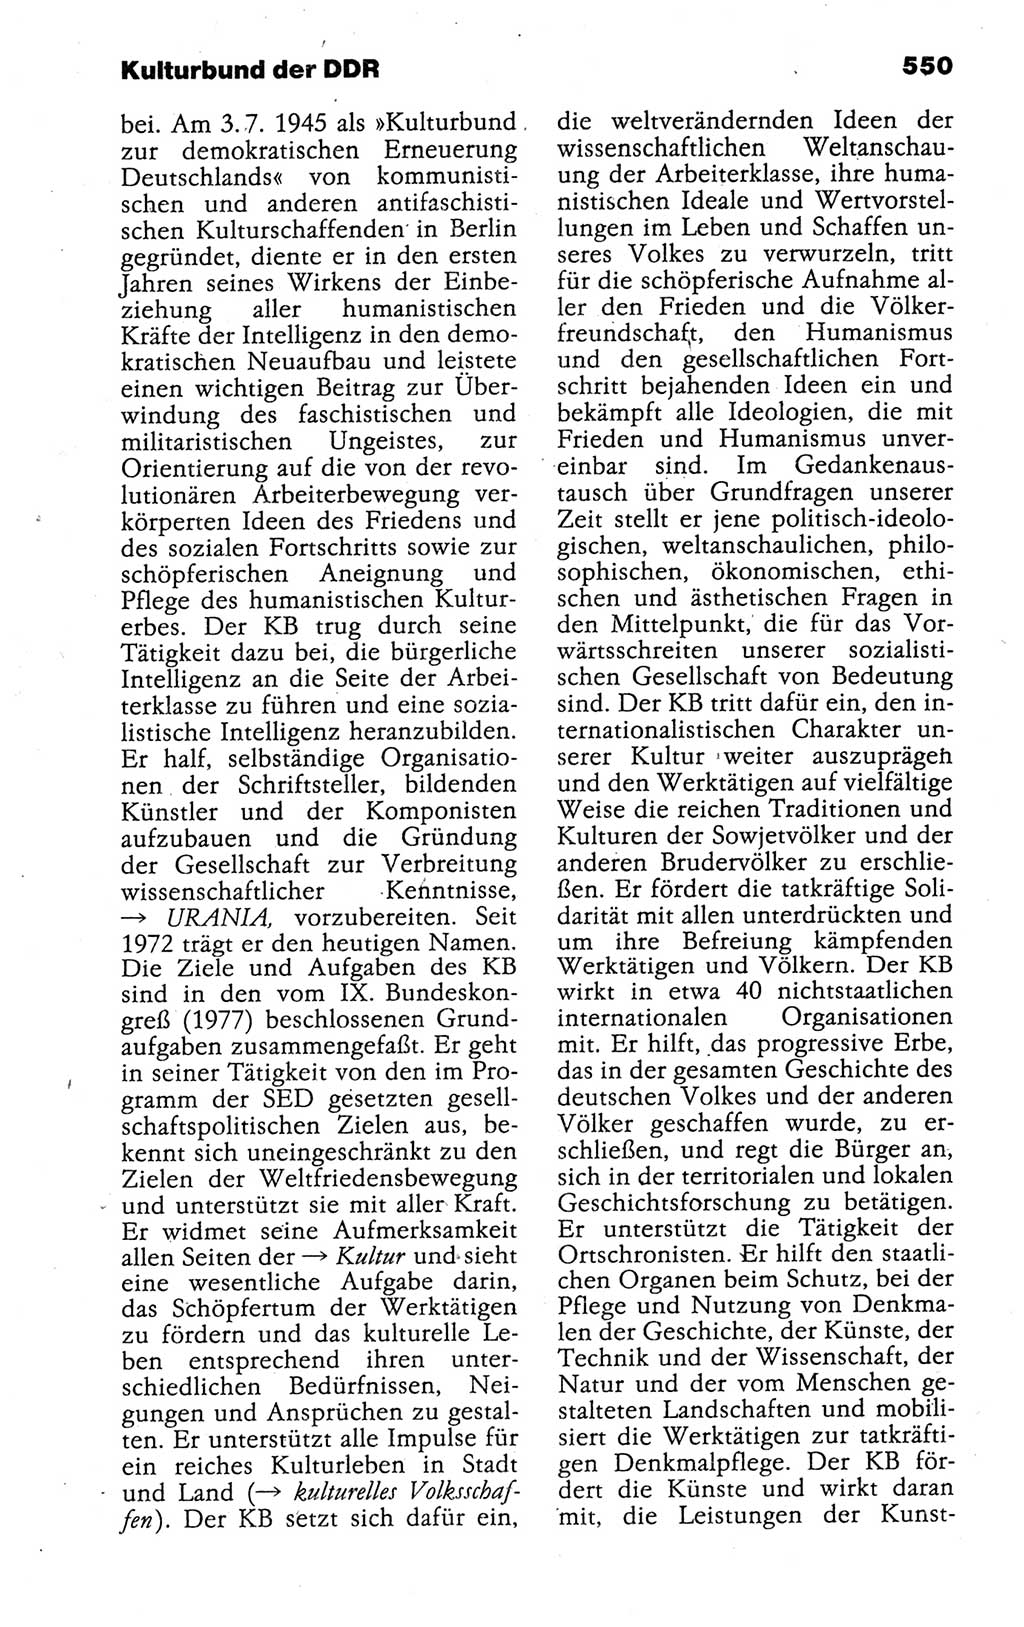 Kleines politisches Wörterbuch [Deutsche Demokratische Republik (DDR)] 1988, Seite 550 (Kl. pol. Wb. DDR 1988, S. 550)